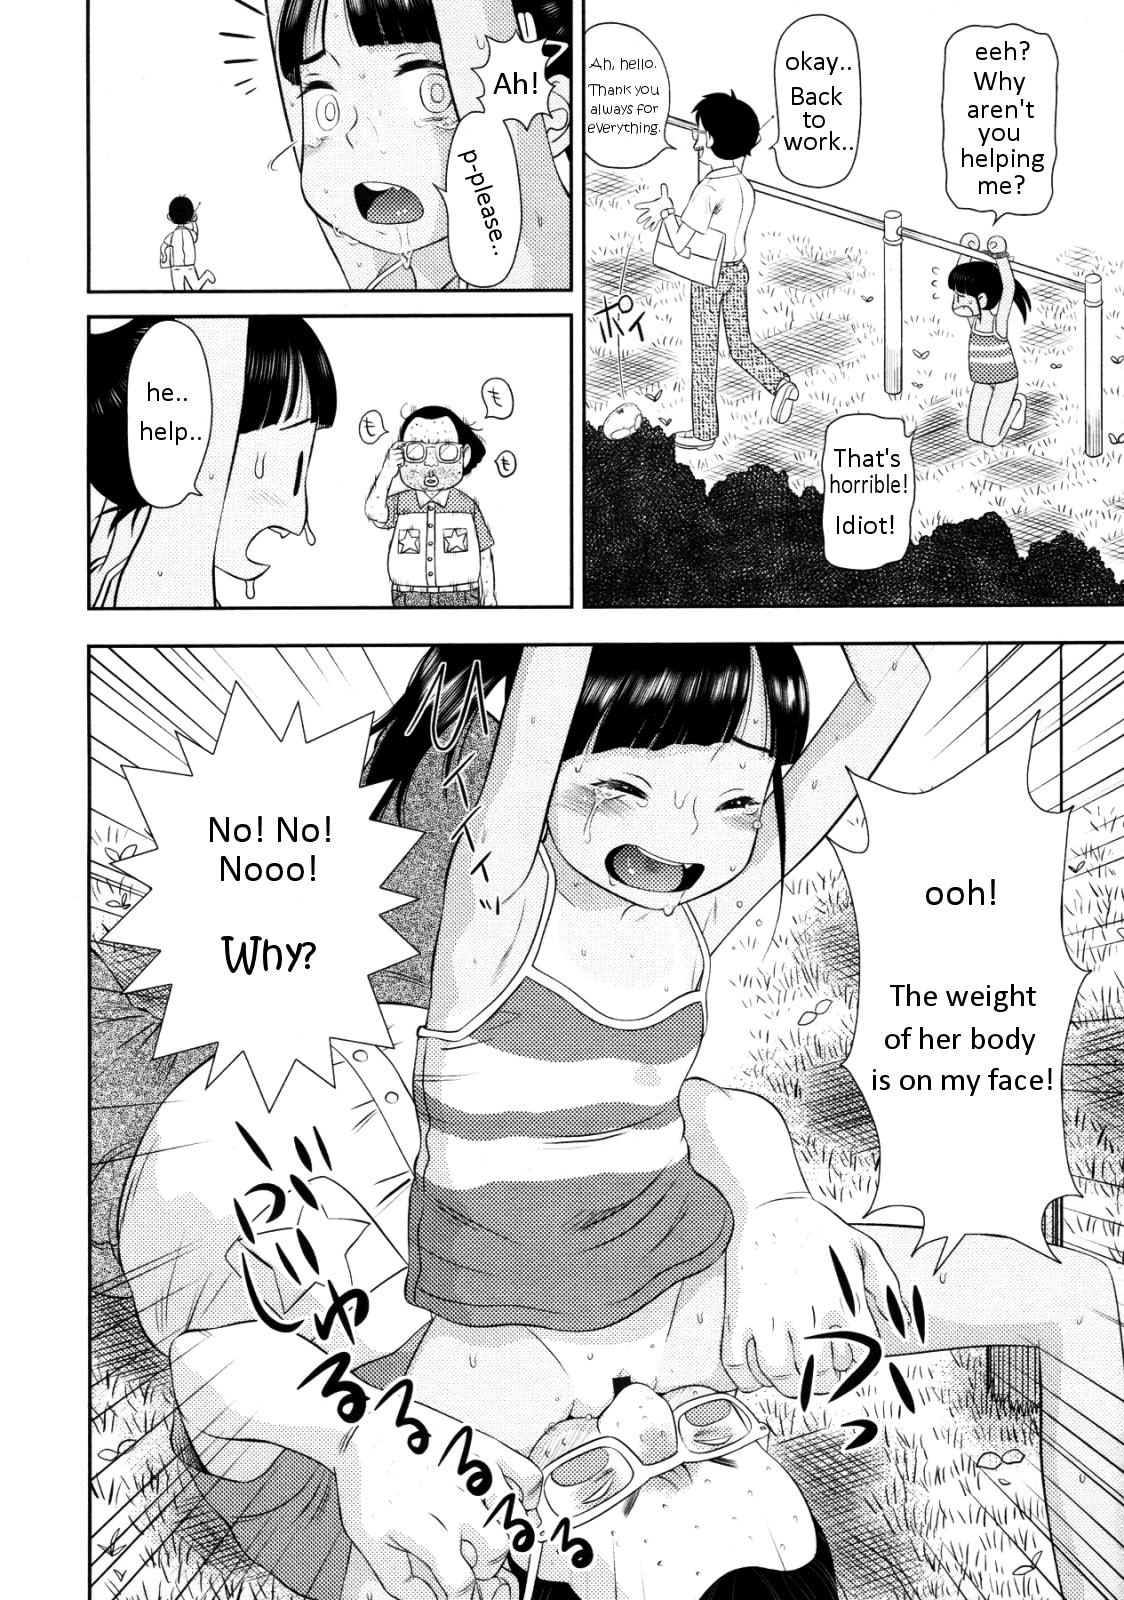 Okizari Mumemo-chan Page 10 Of 22 hentai haven, Okizari Mumemo-chan Page 10...